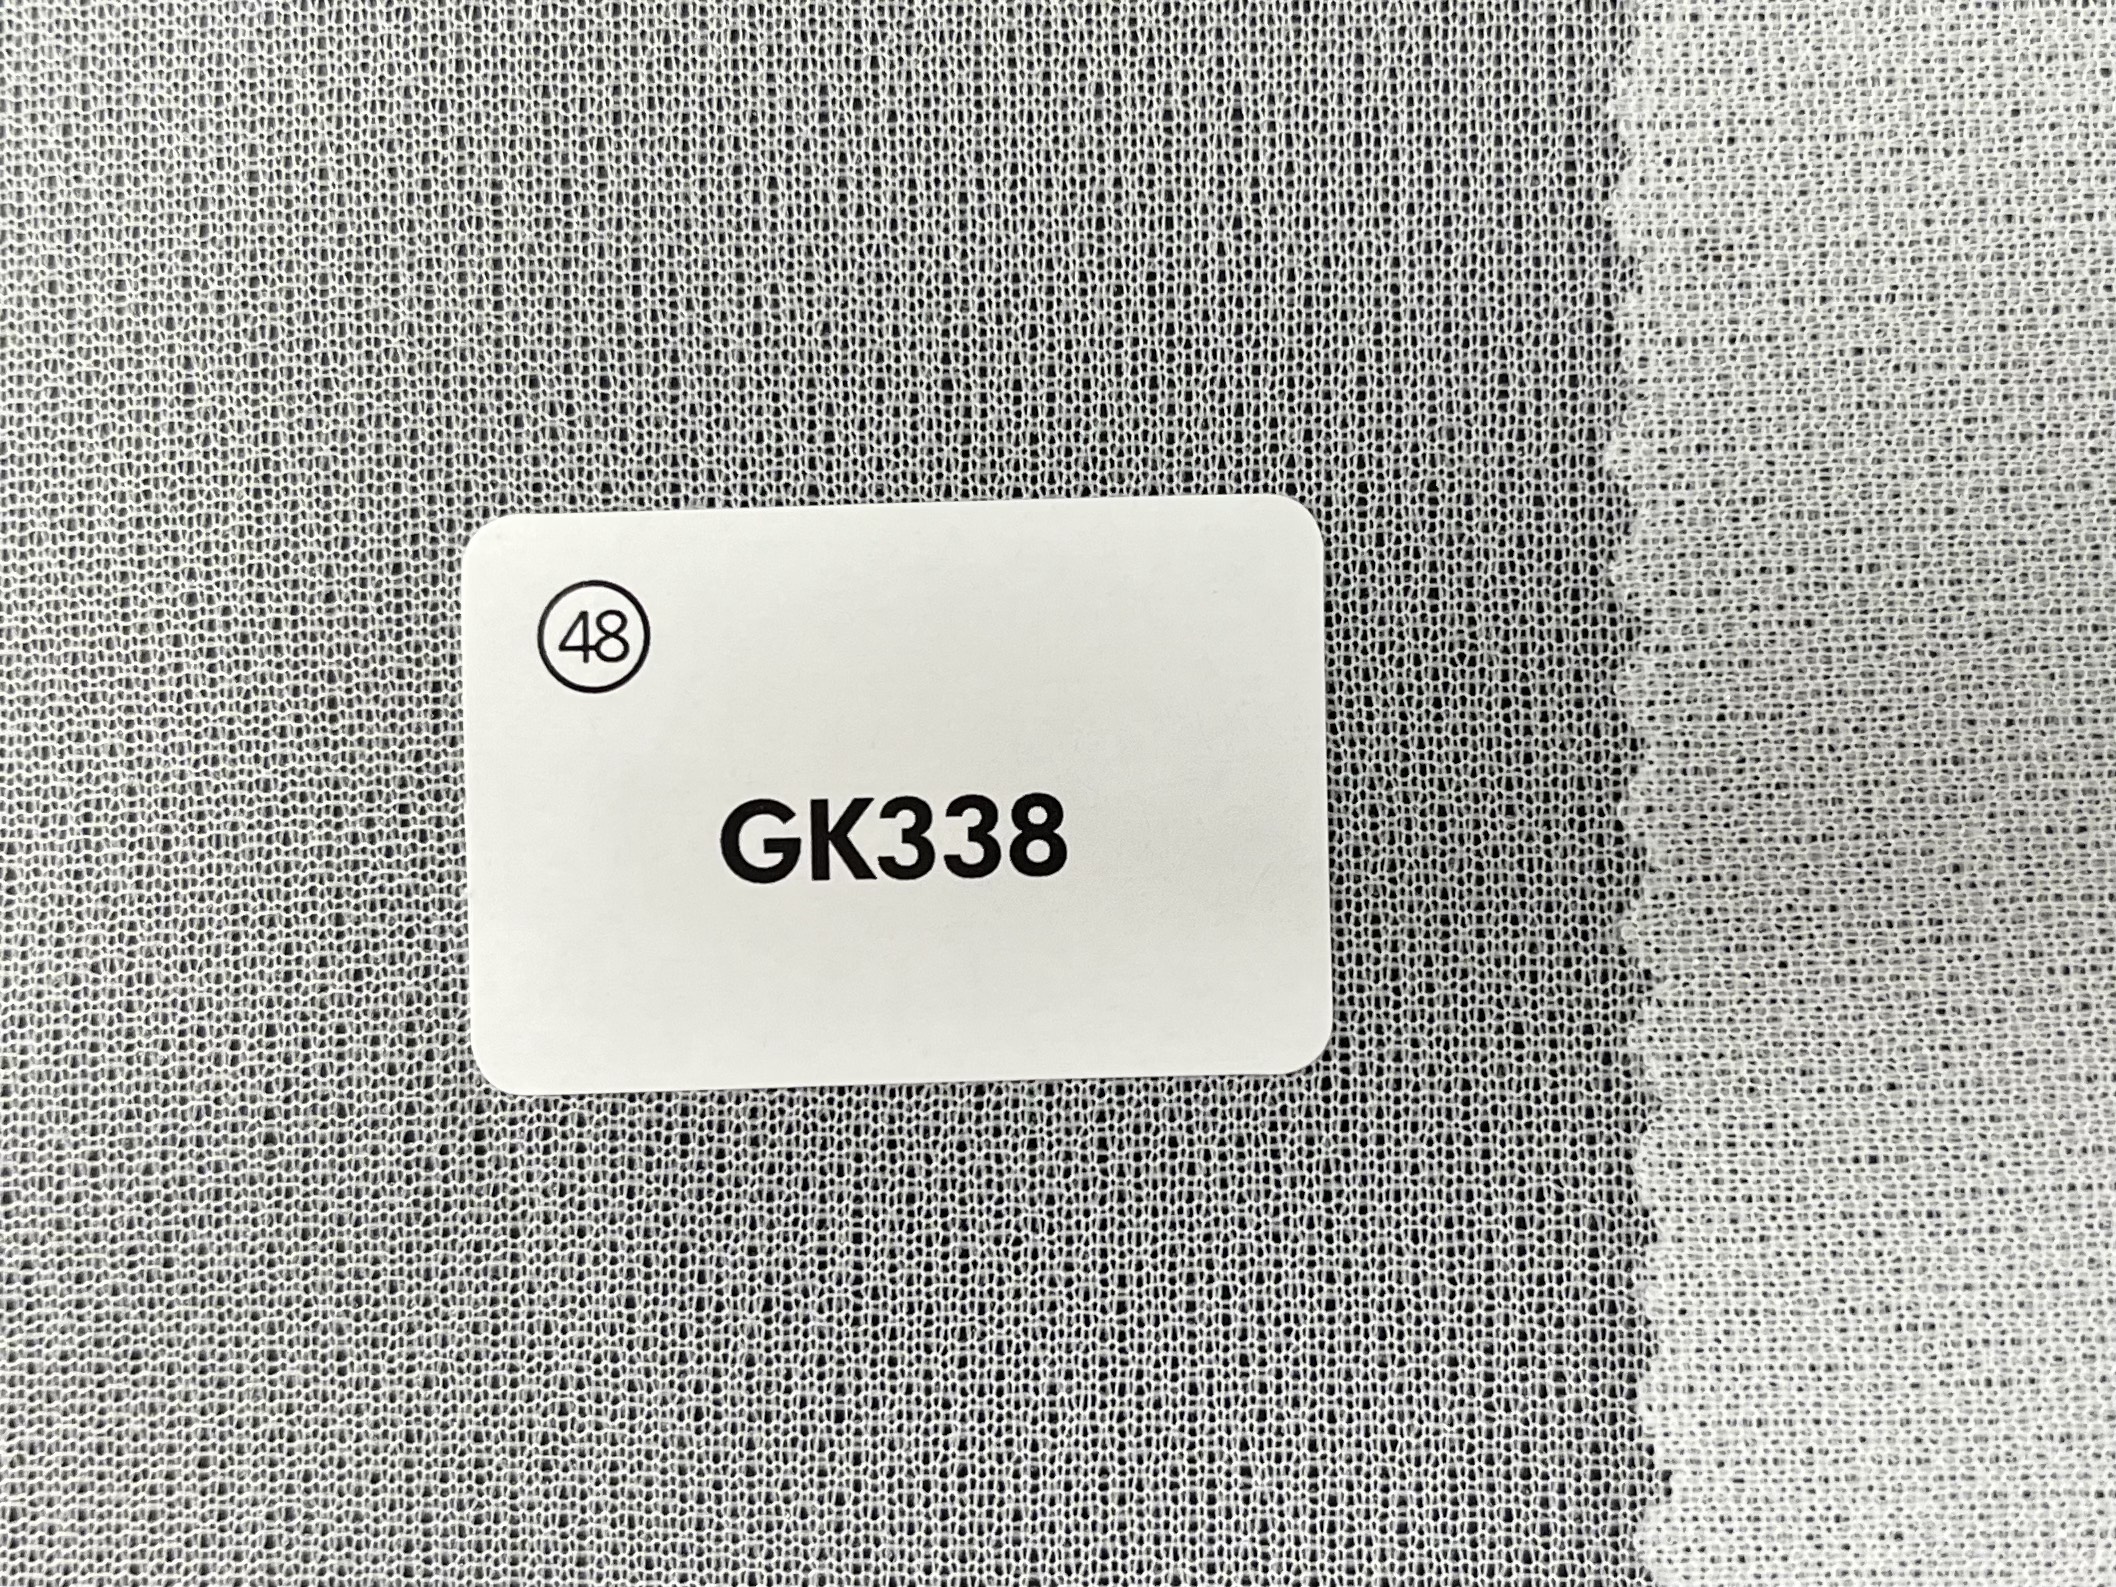 GK338